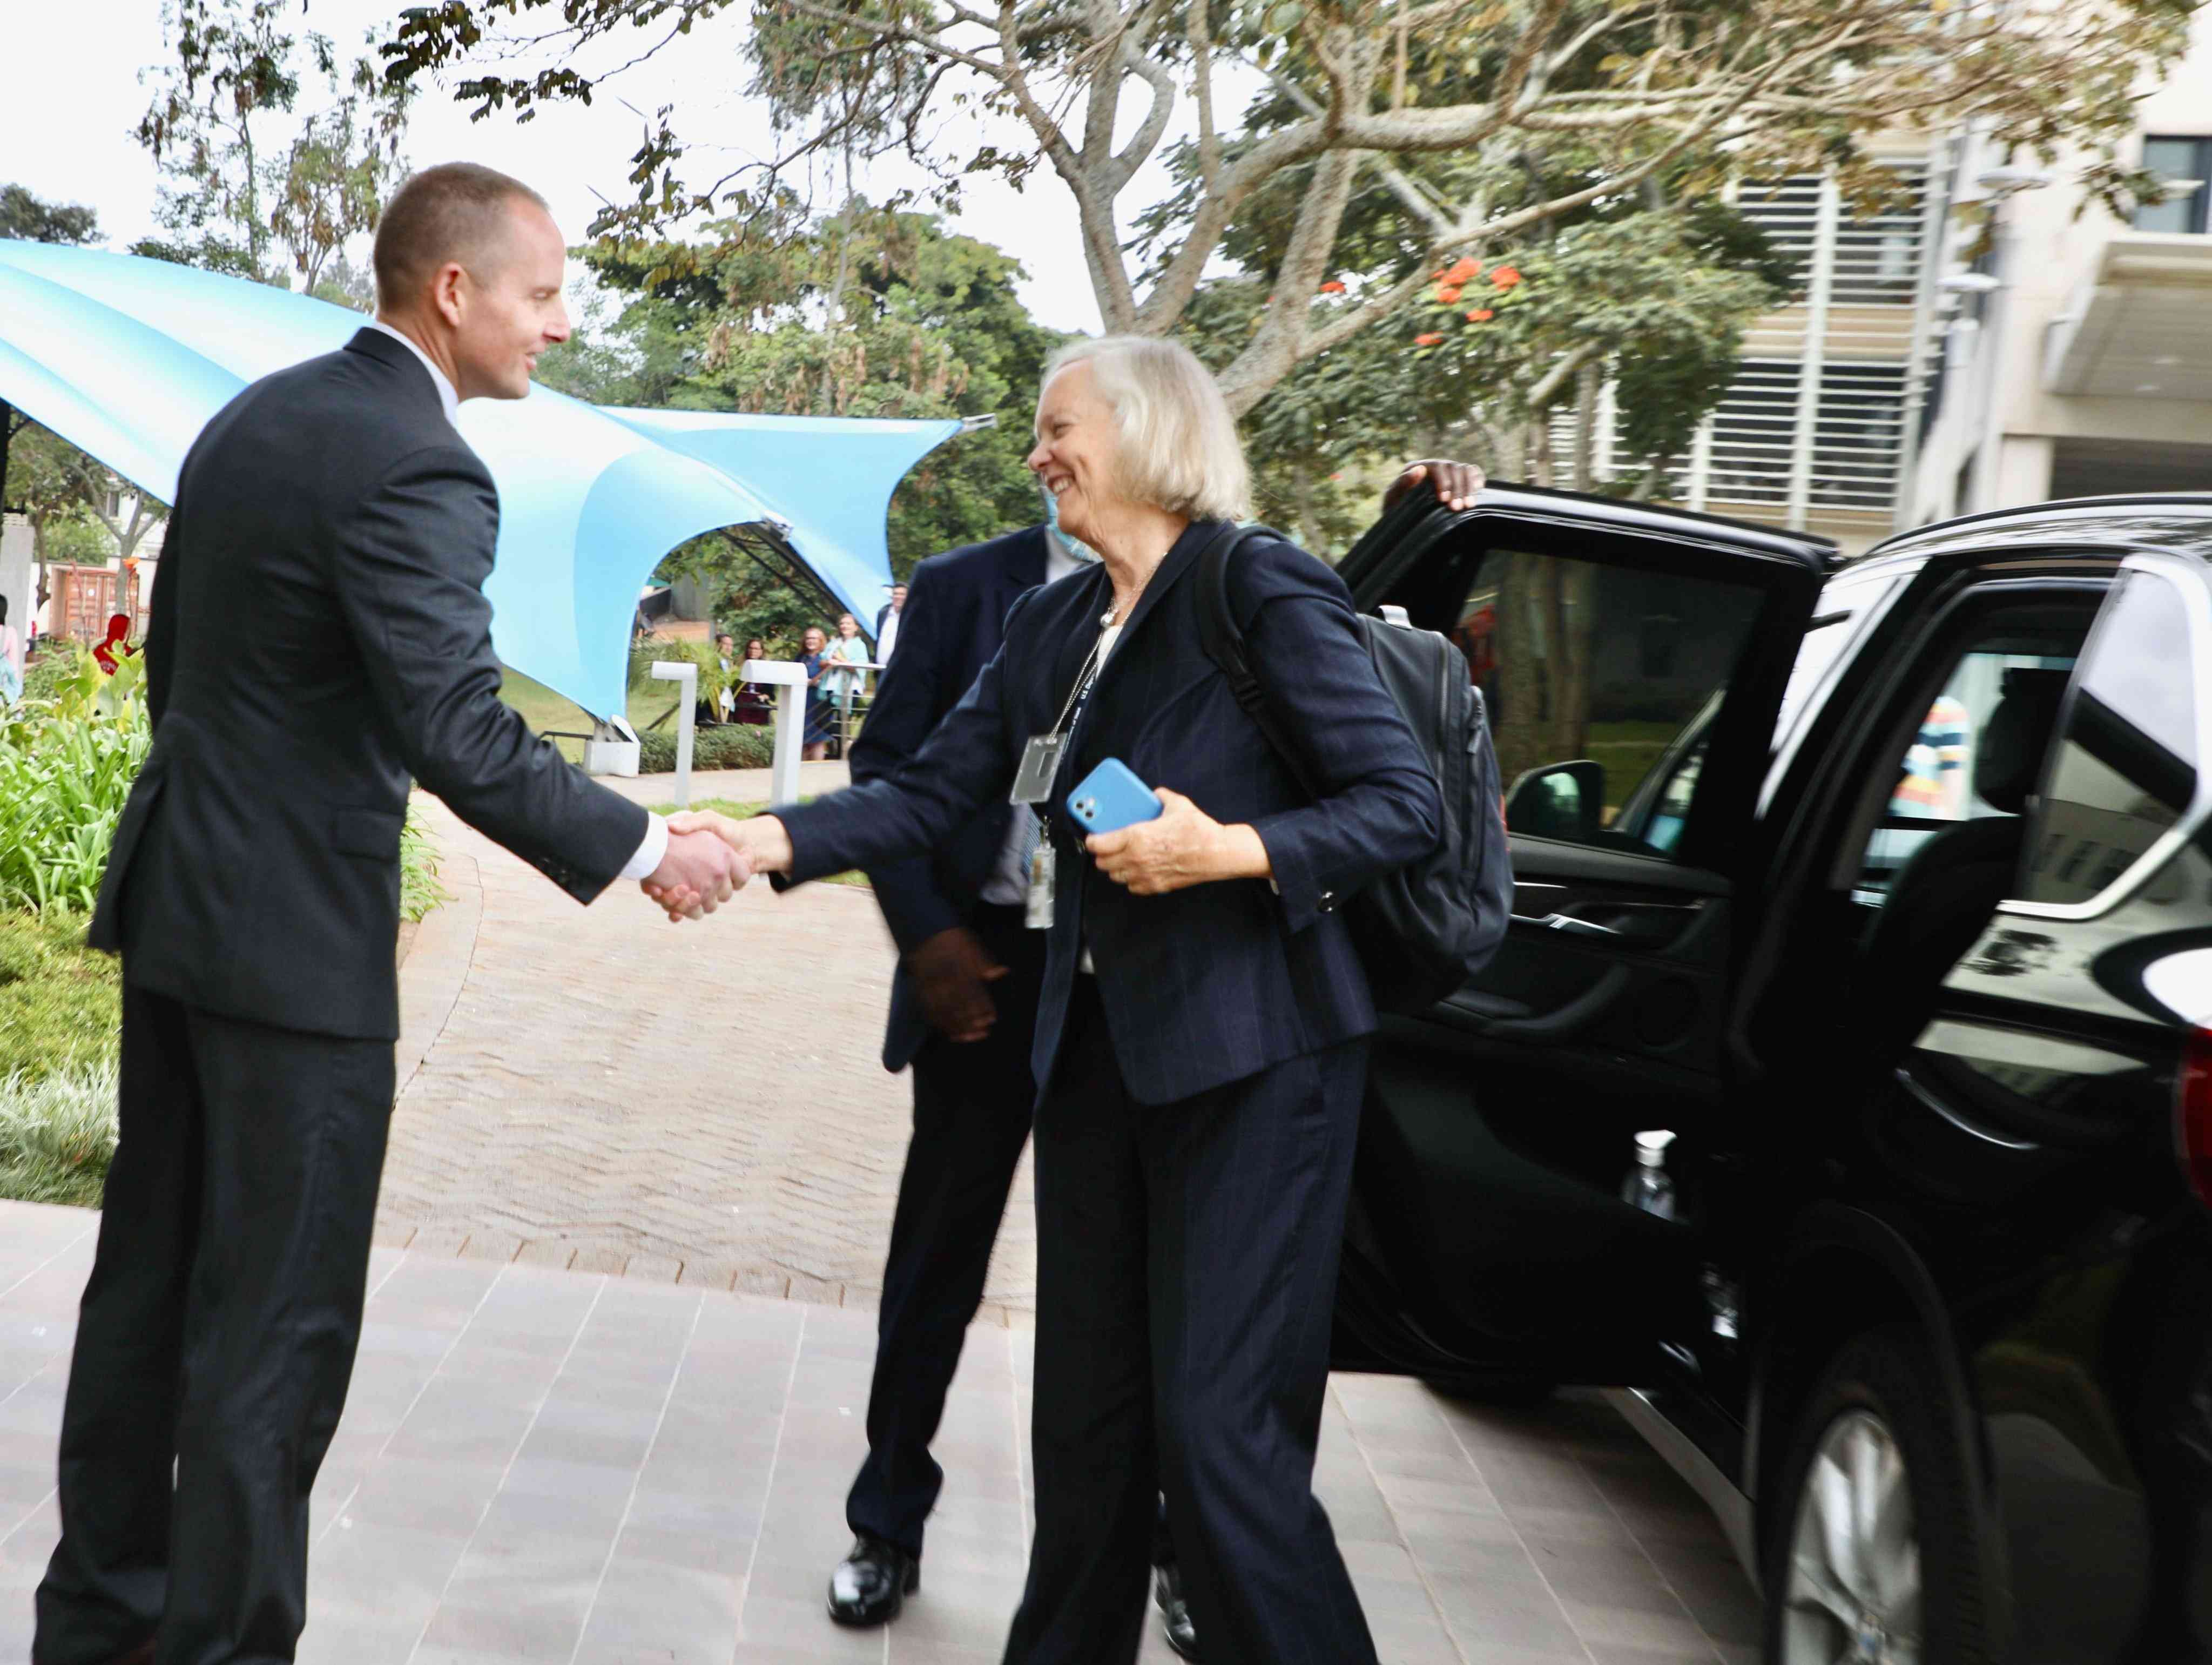 Meg Whitman reports for duty as US envoy to Nairobi